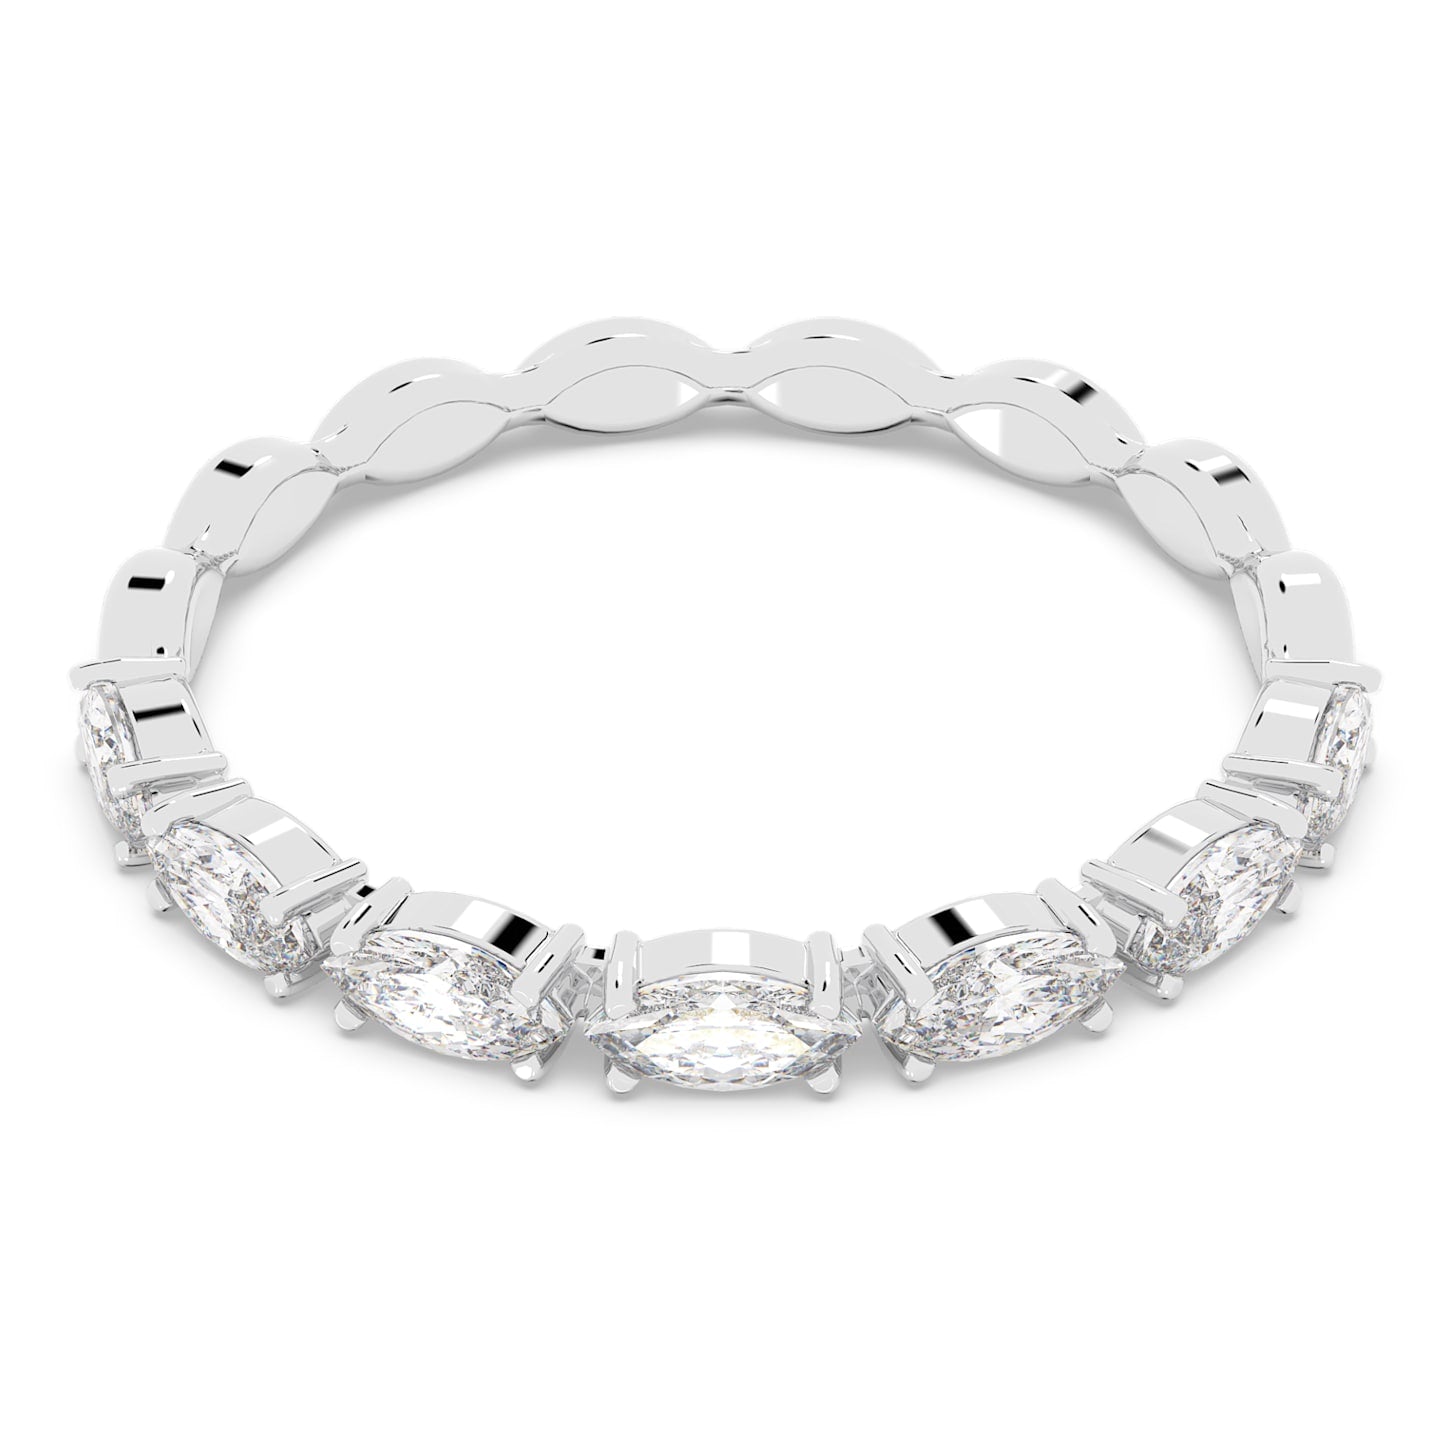 Vittore – Silber Weiß – Marquise – Ring – Swarovski